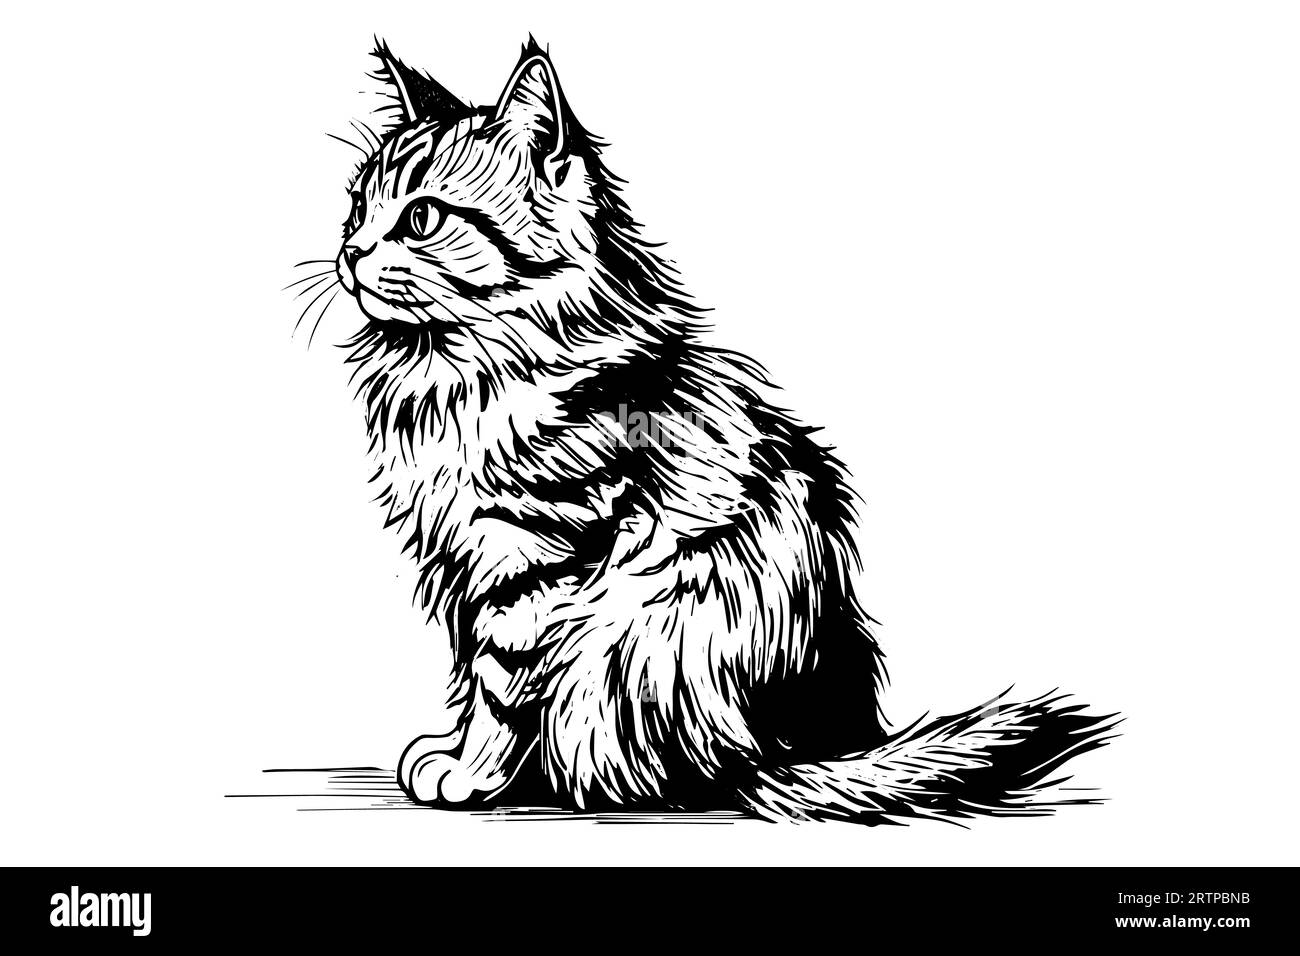 Mignon chat dessiné à l'encre dessin à la main gravure vintage style.Vector illustration. Illustration de Vecteur